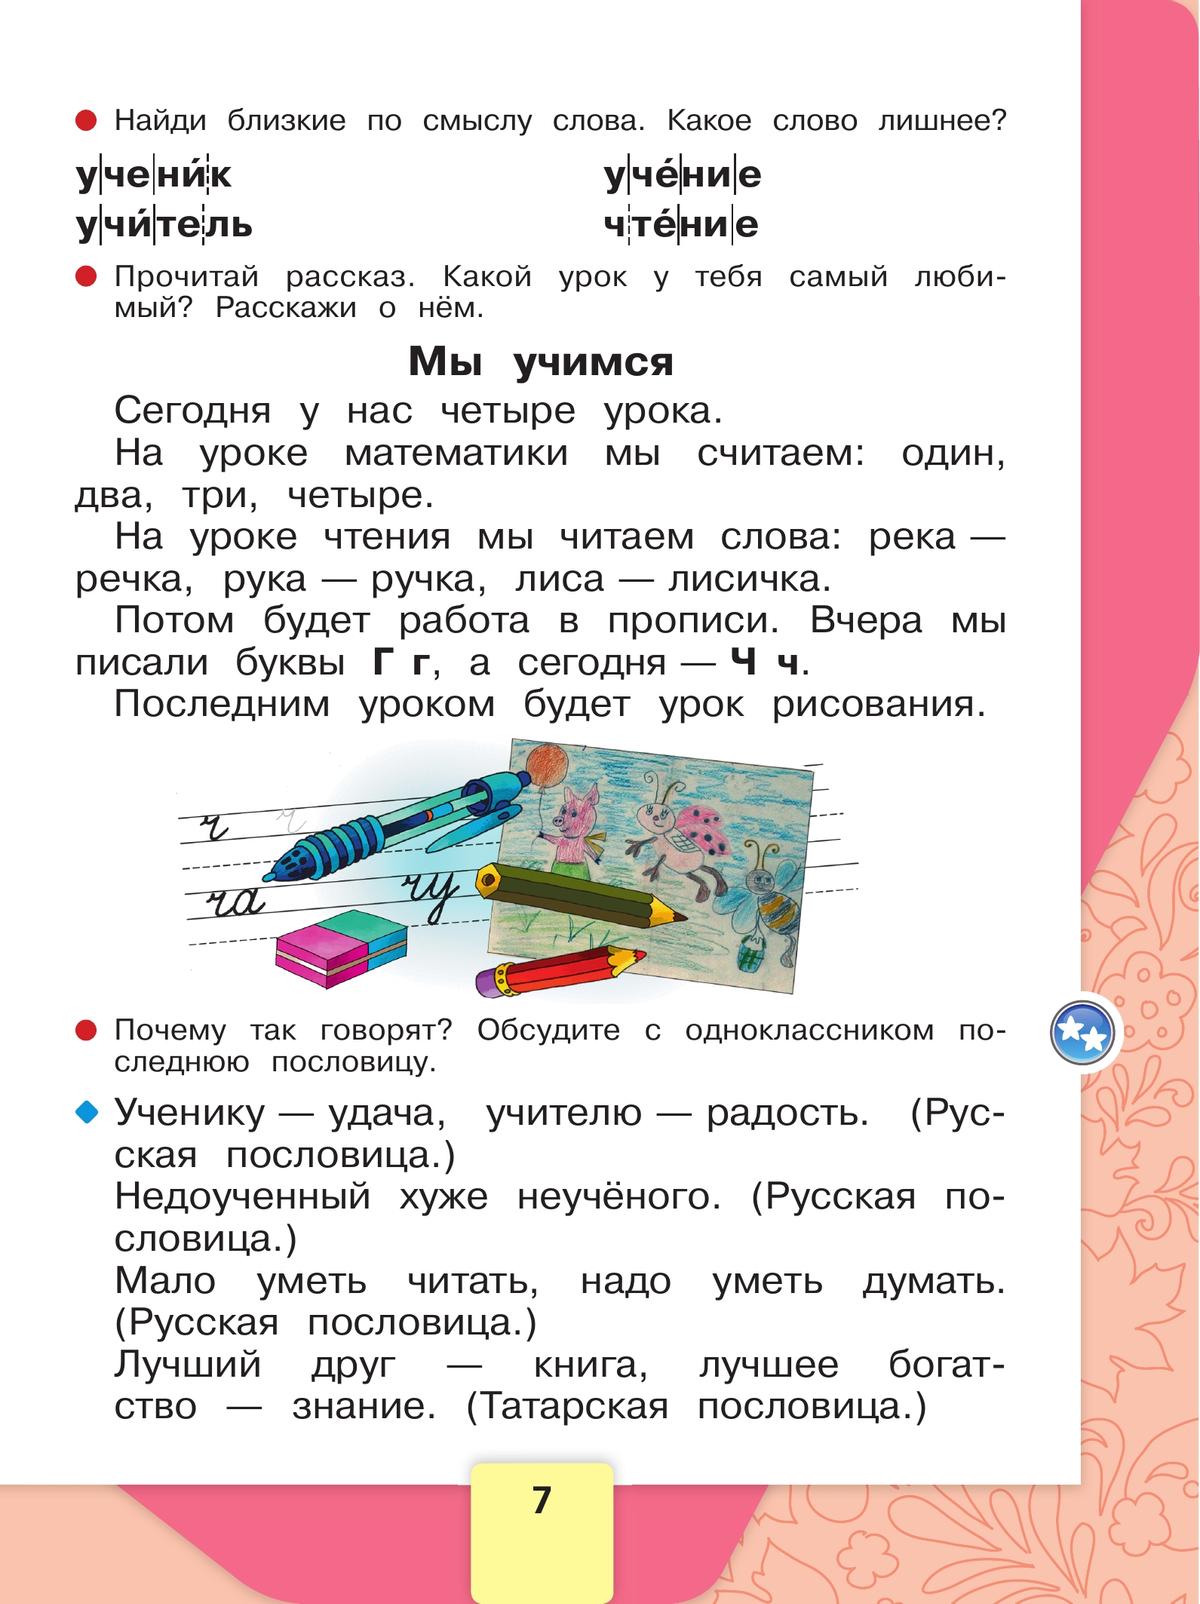 Русский язык. Азбука. 1 класс. Учебник. В 2 ч. Часть 2 8